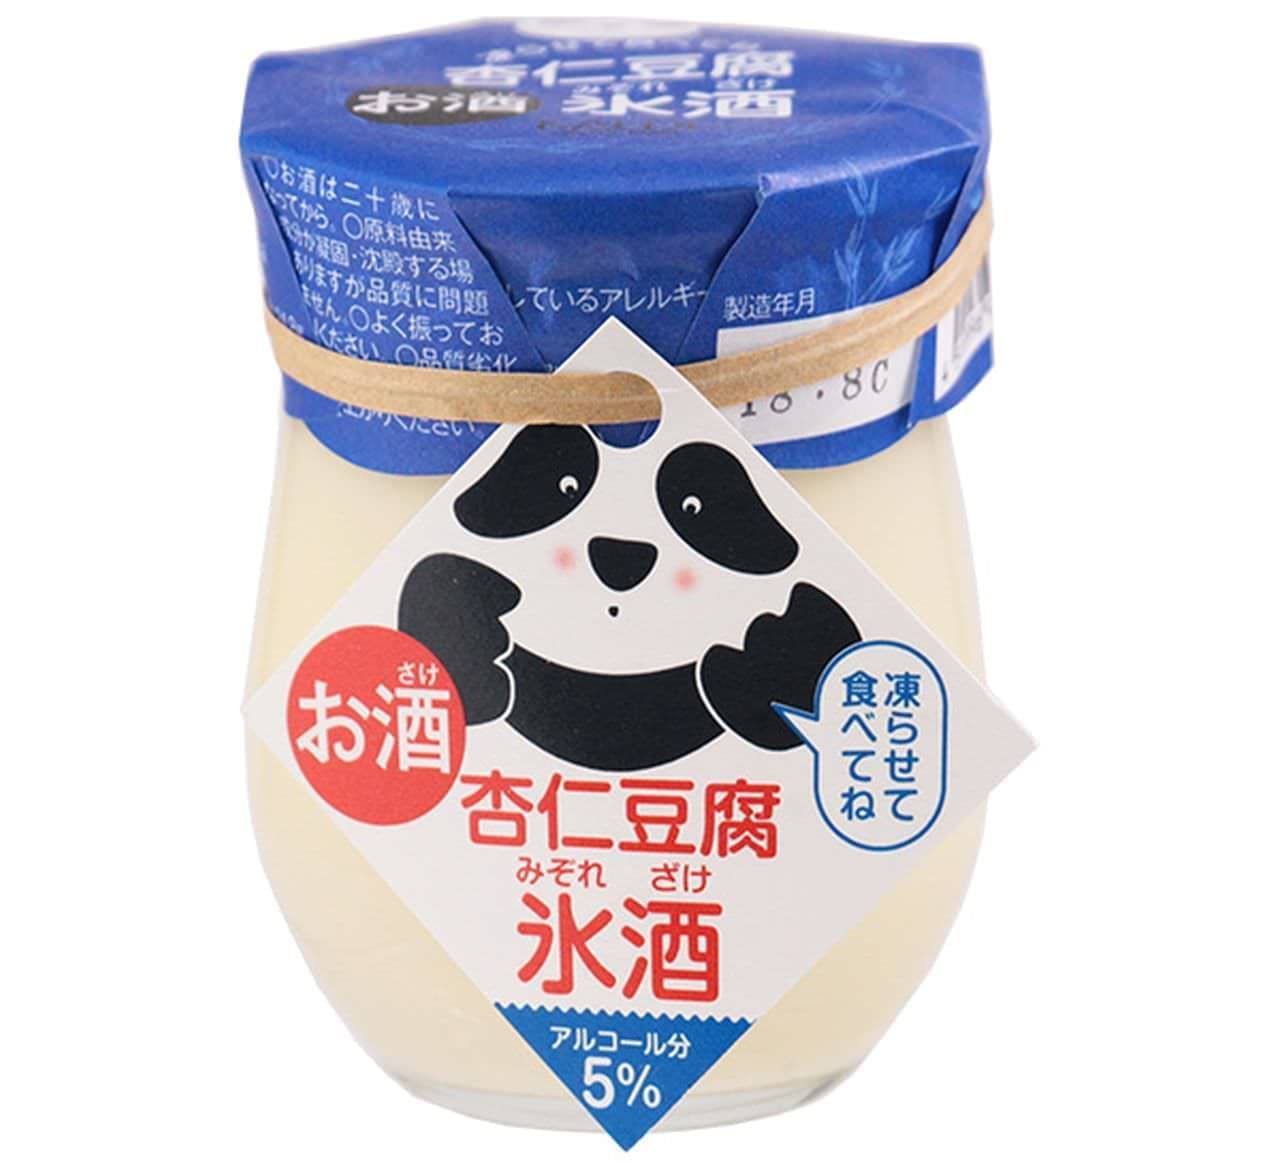 カルディオリジナル 杏仁豆腐 氷酒